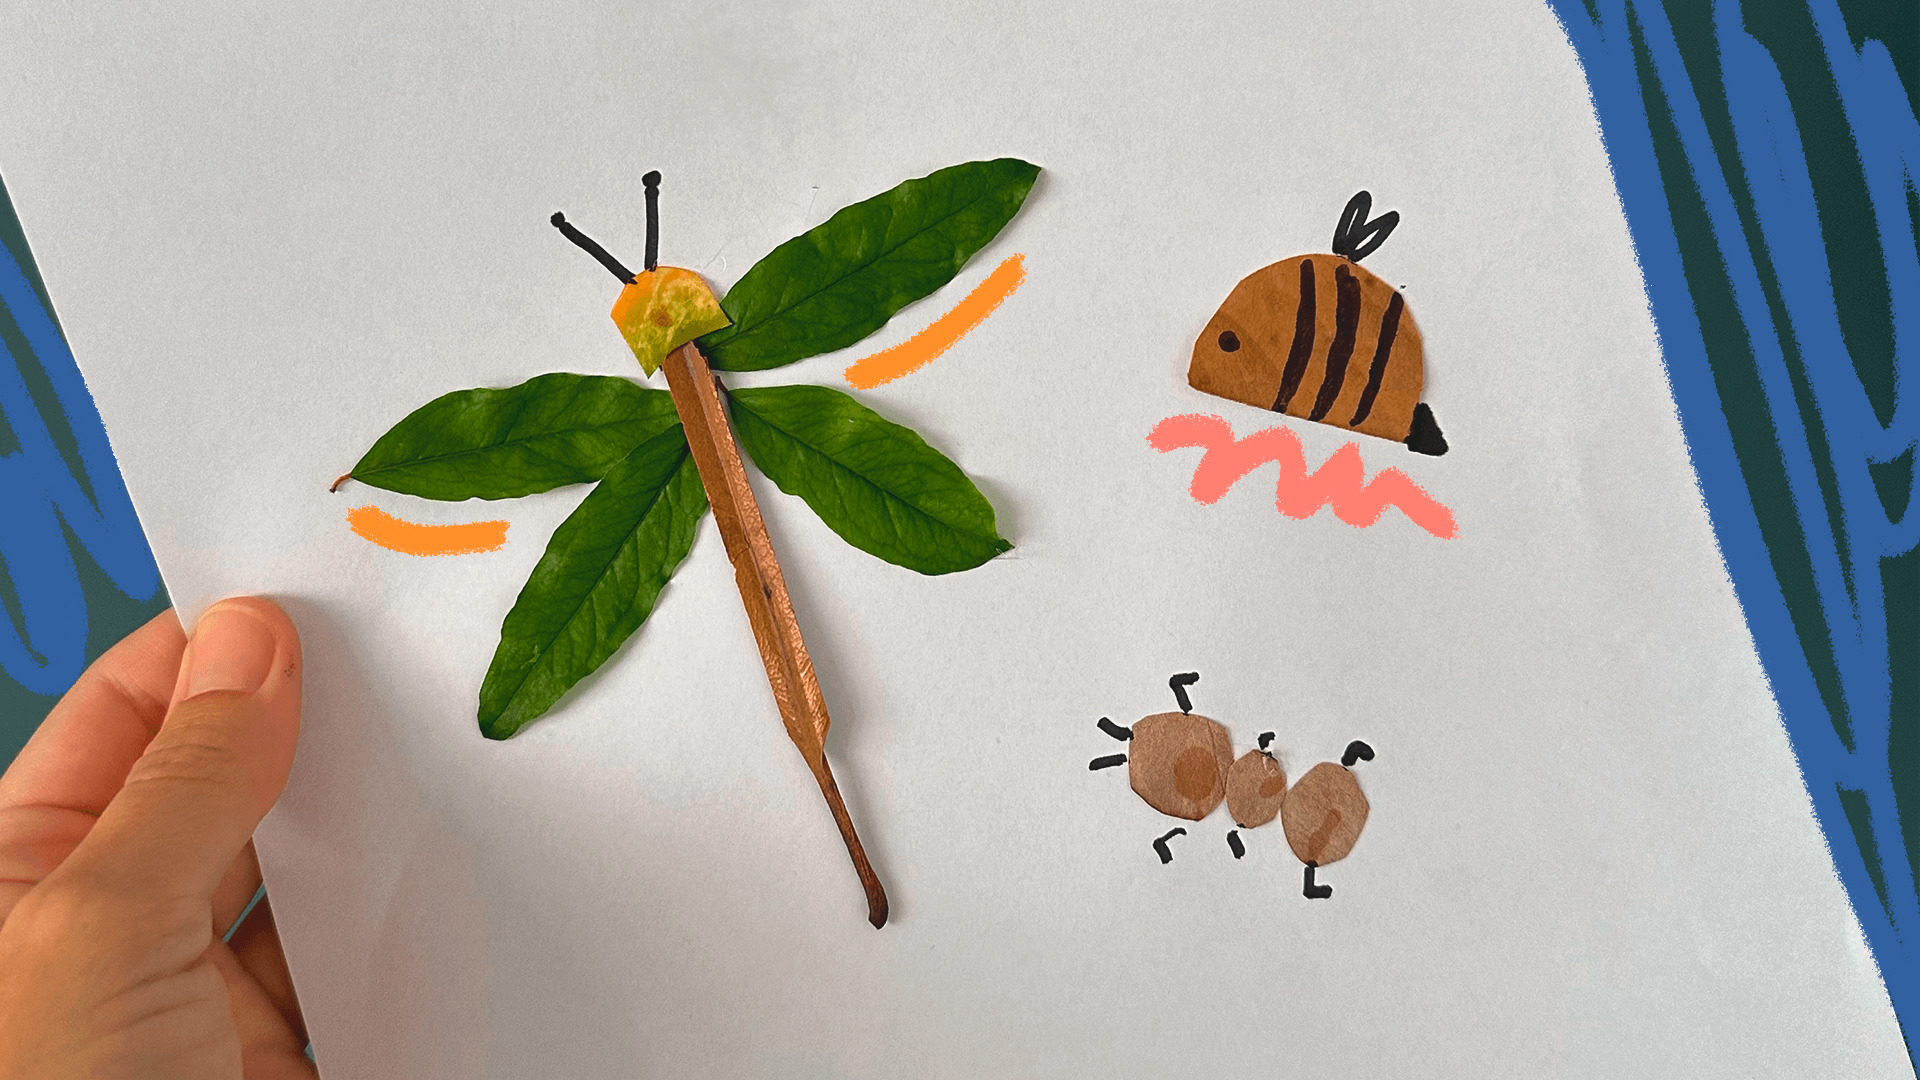 imagem mostra animais feitos com folhas e sementes coladas em um papel